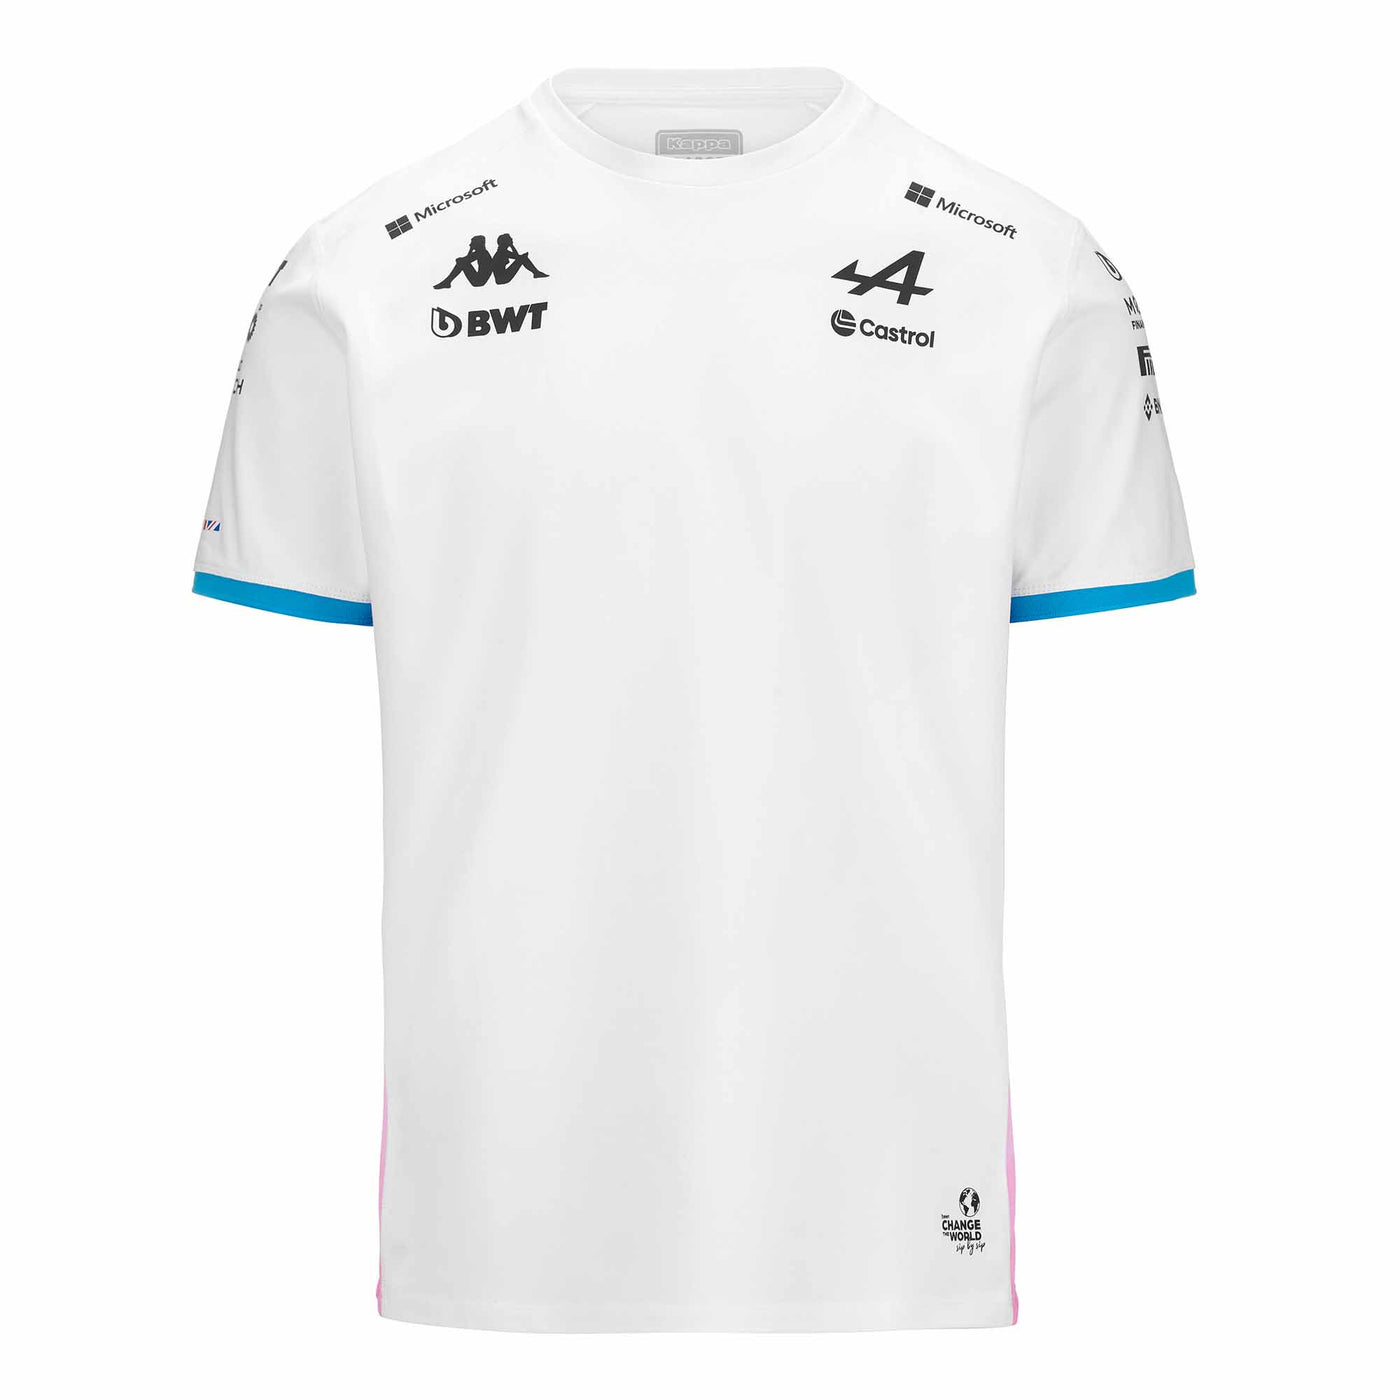 T-Shirt Adiry BWT Alpine F1 Team 2024 Blanc Enfant